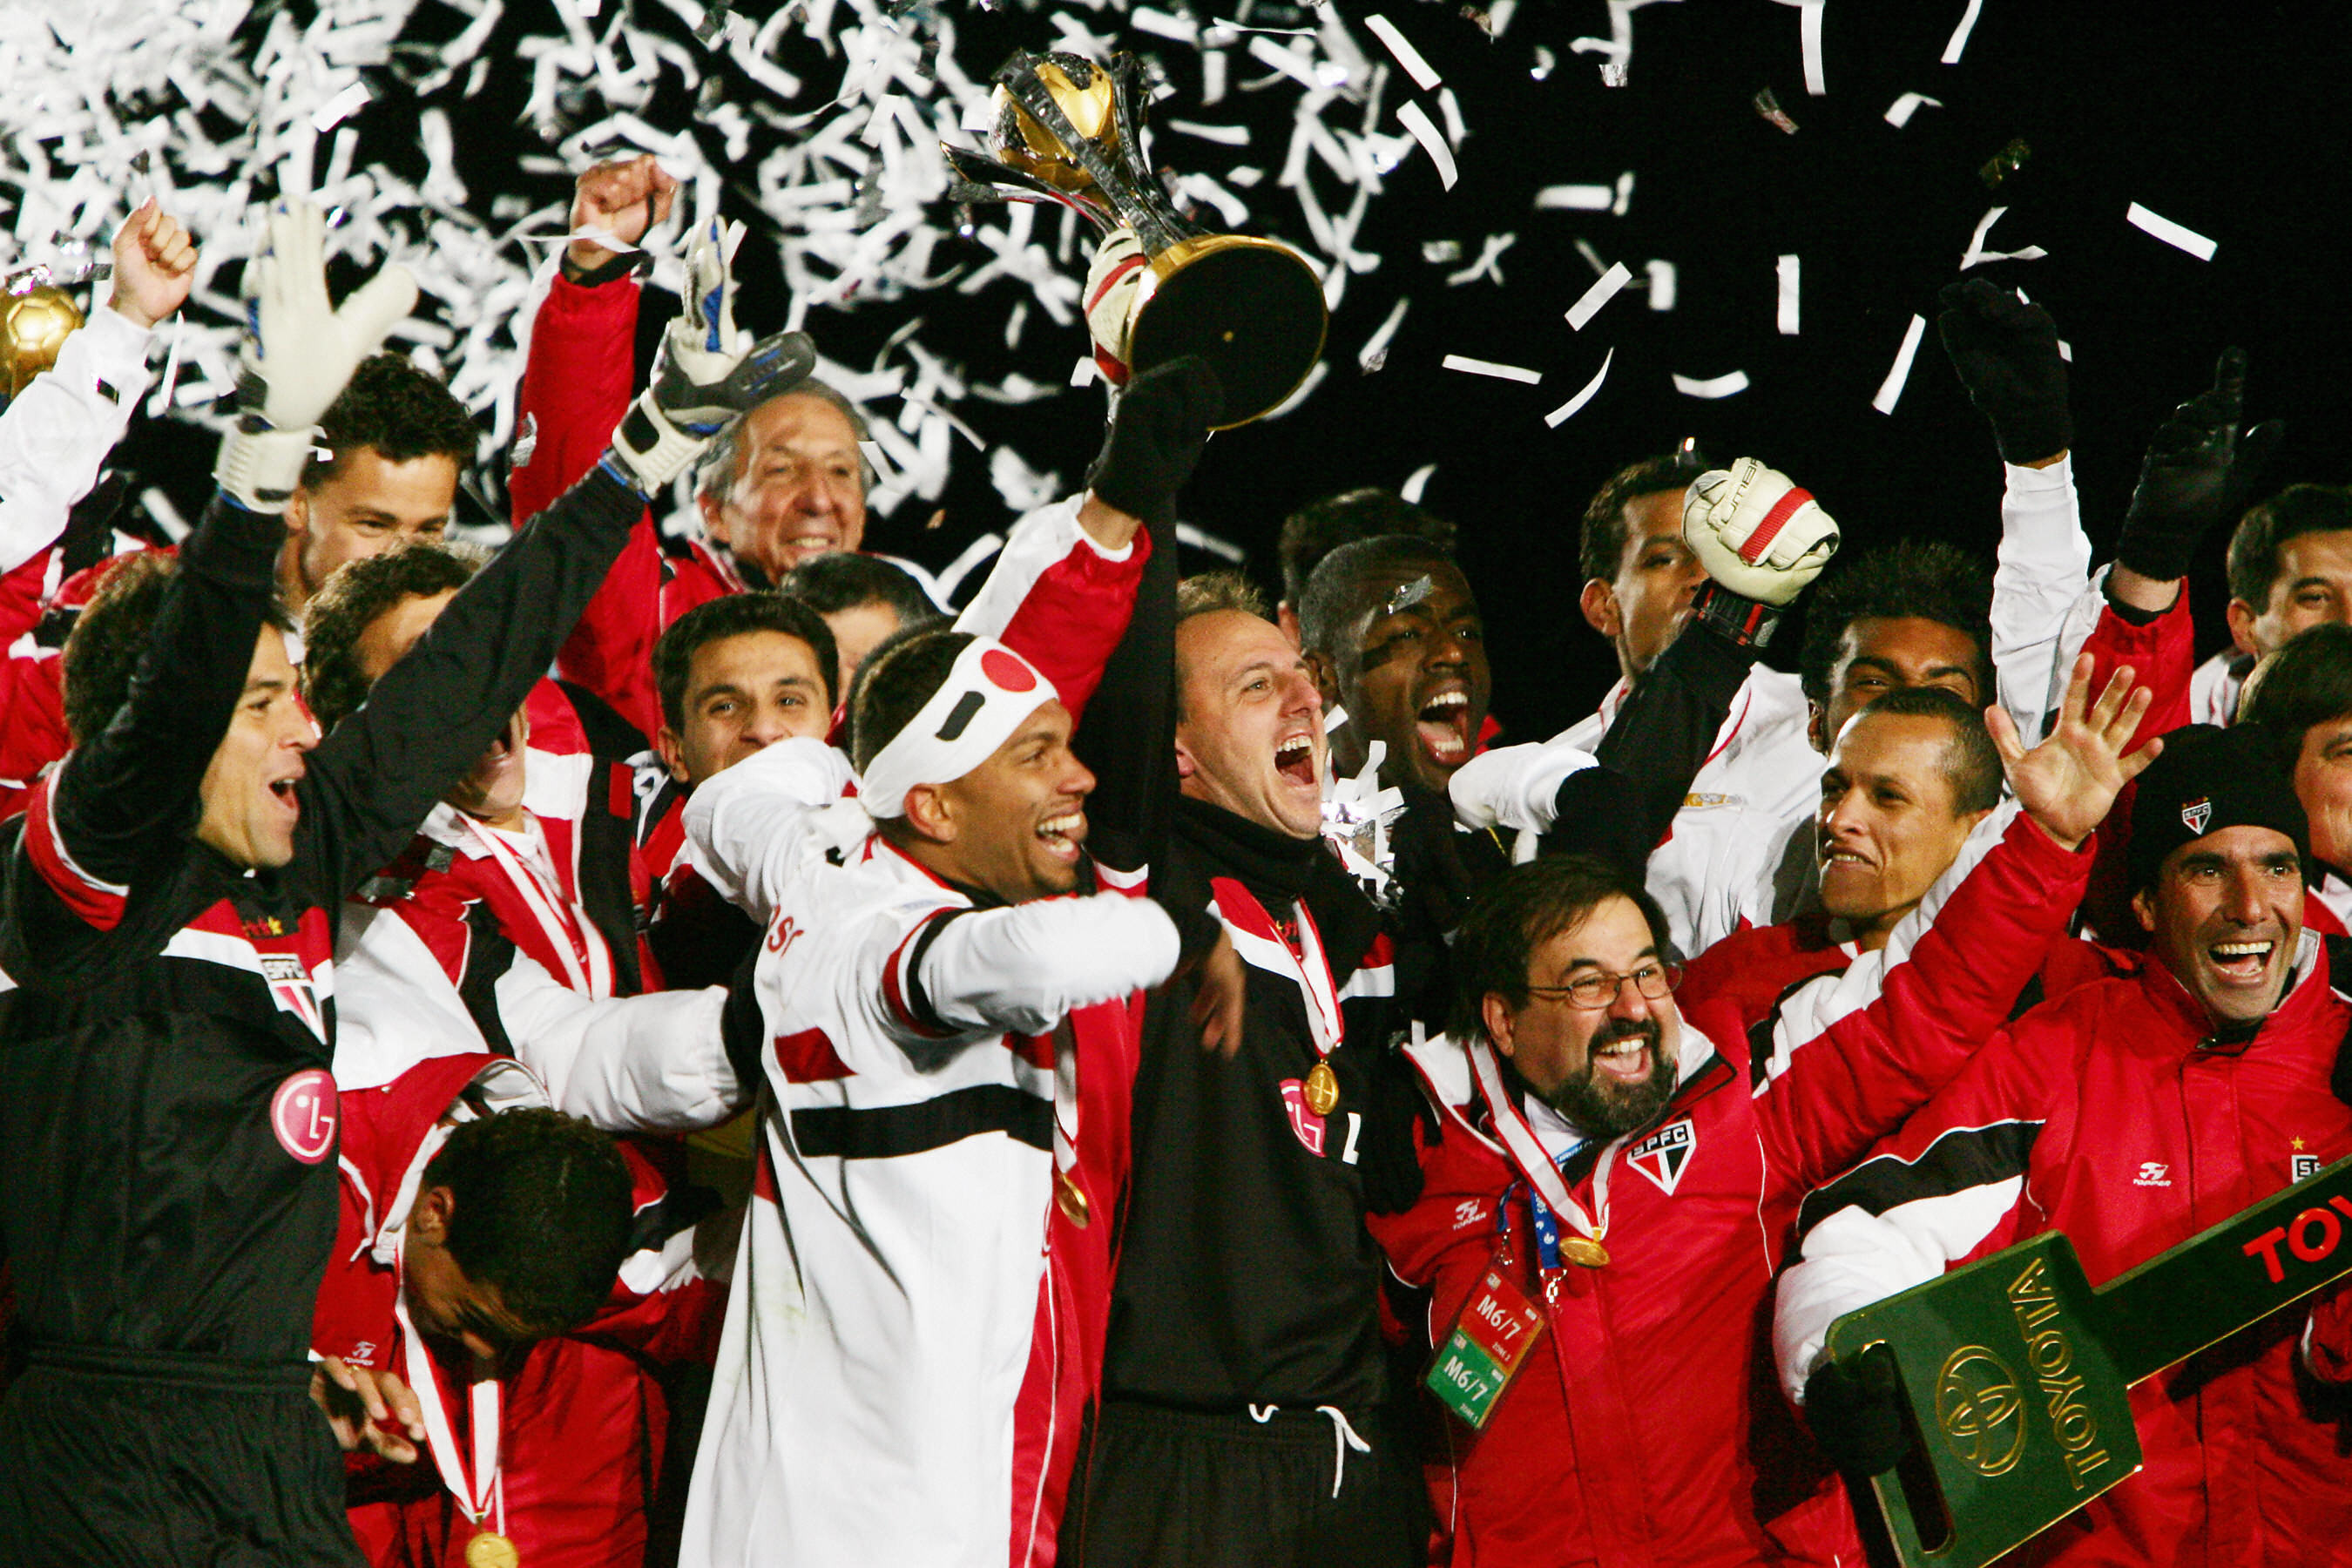 Os campeões mundiais de clubes entre 2005 e 2020 - 01/02/2021 - Mundial de  Clubes - Fotografia - Folha de S.Paulo